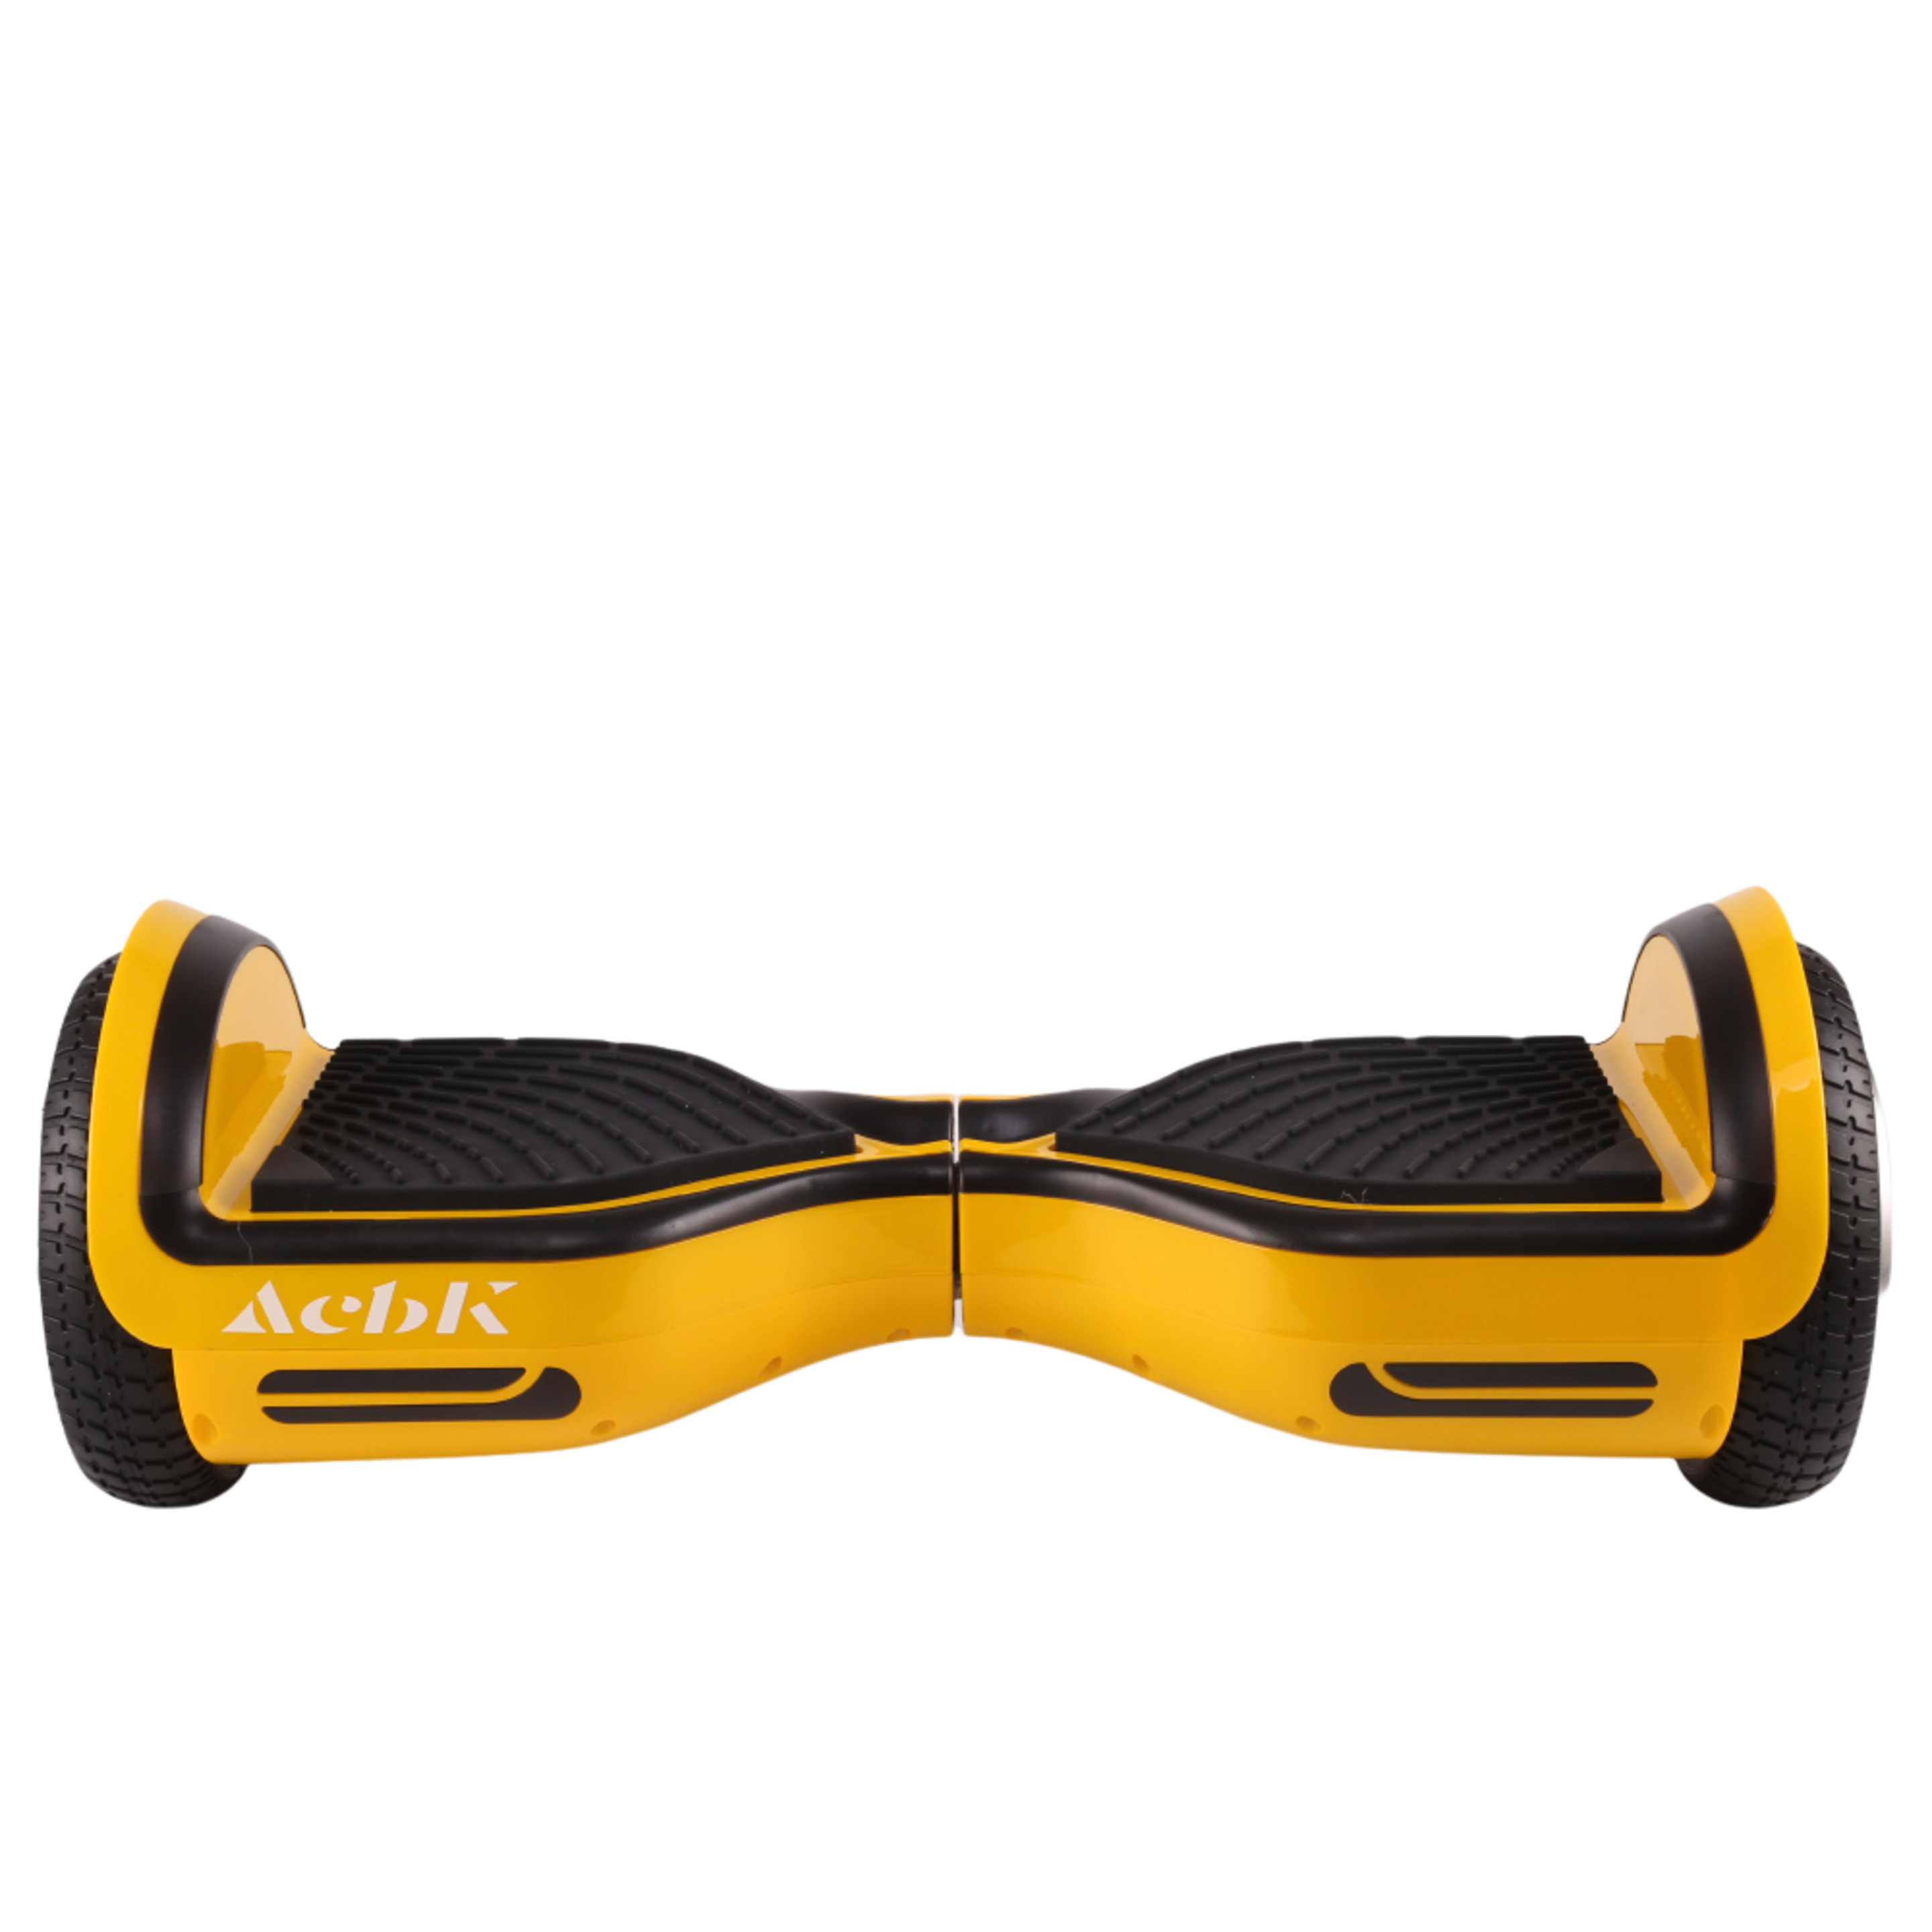 Acbk Hoverboard Conbluetooth Y Bolsa 250w - amarillo - 